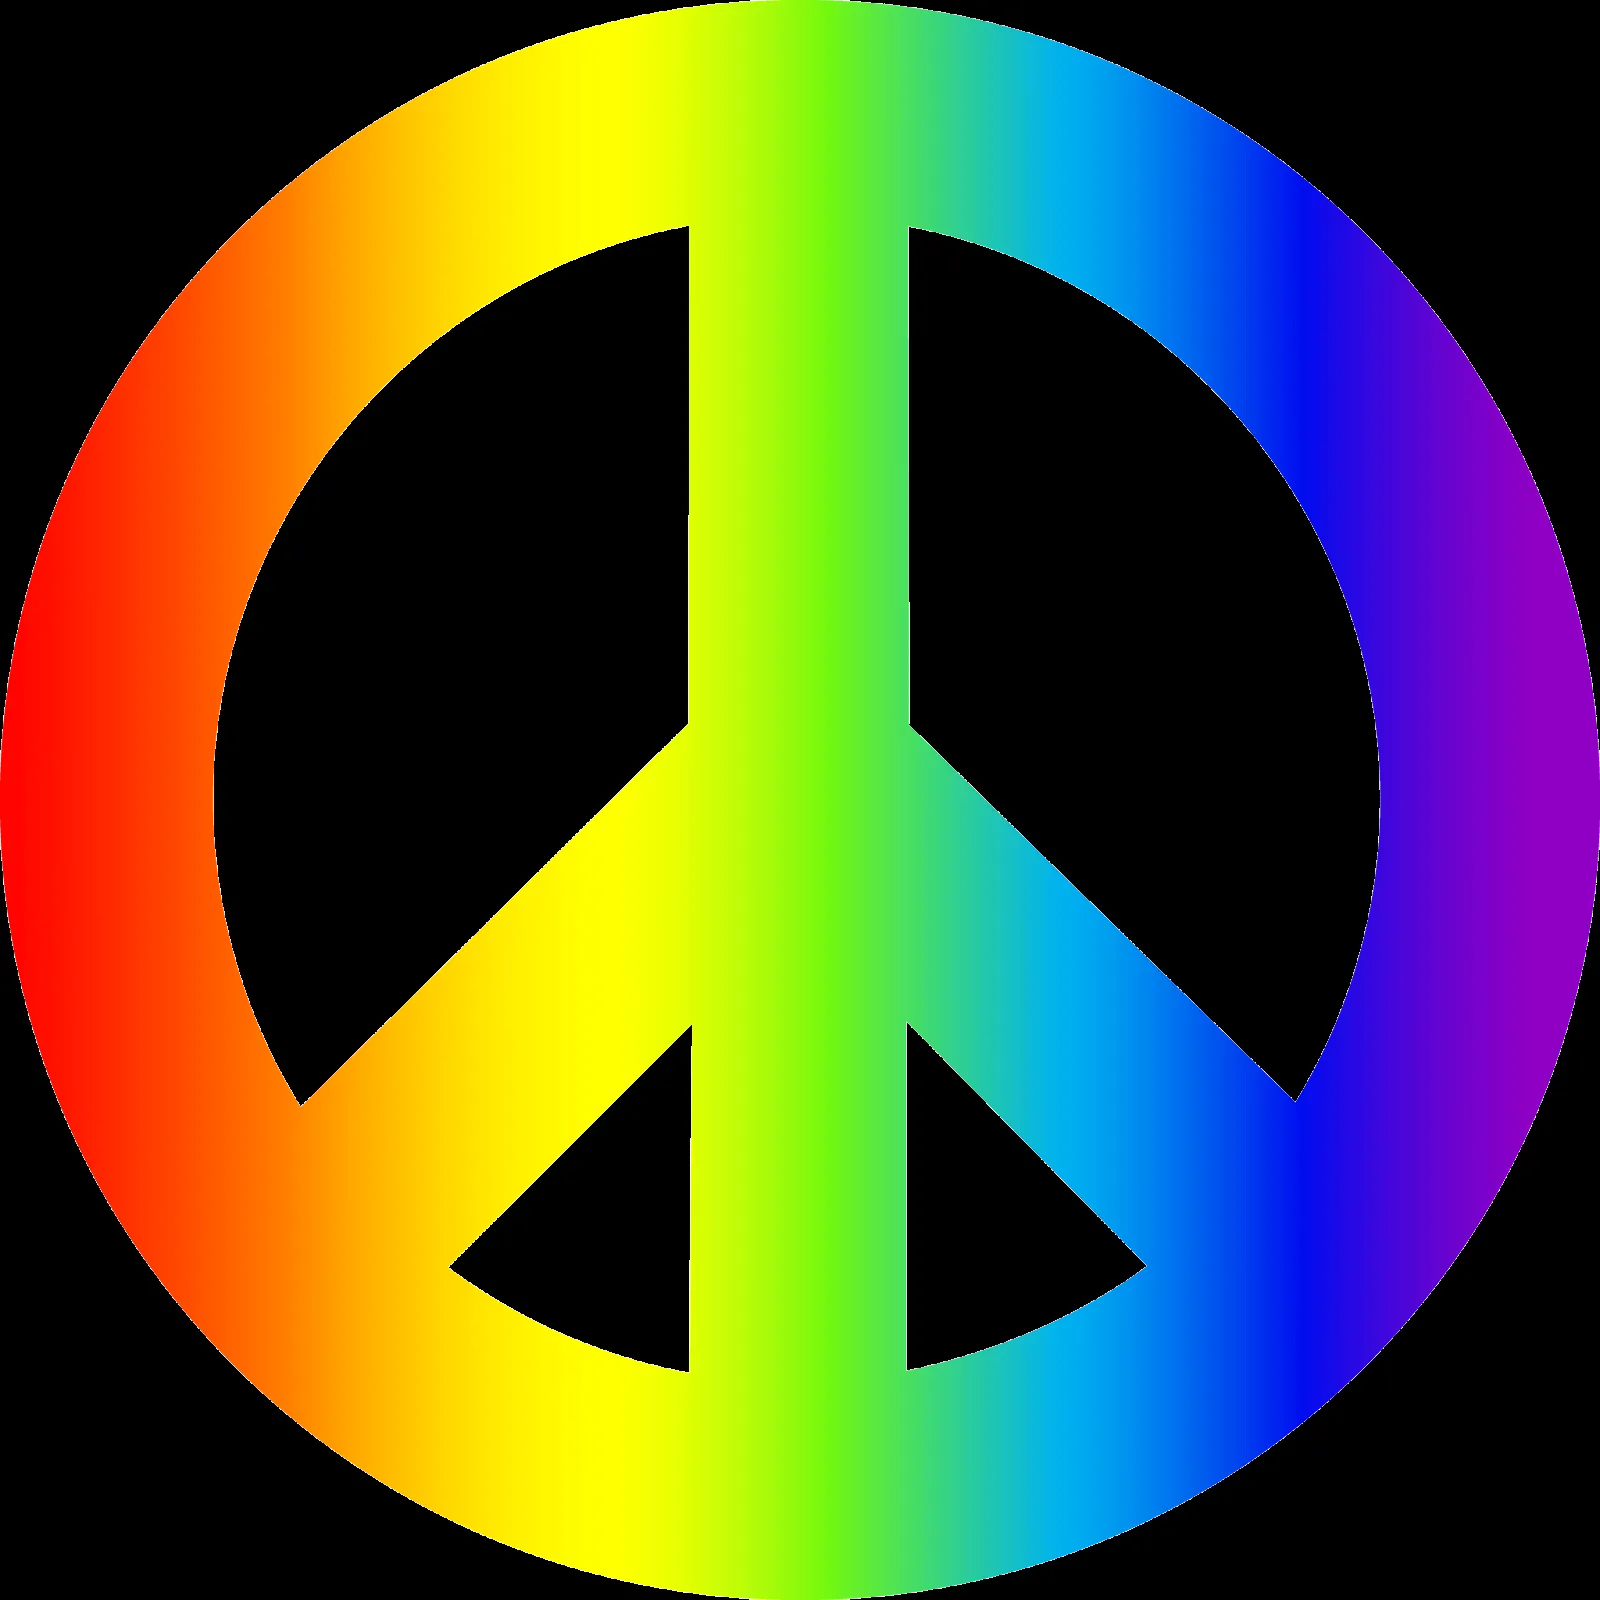 Imagenes y fotos: Simbolos de la Paz, parte 1